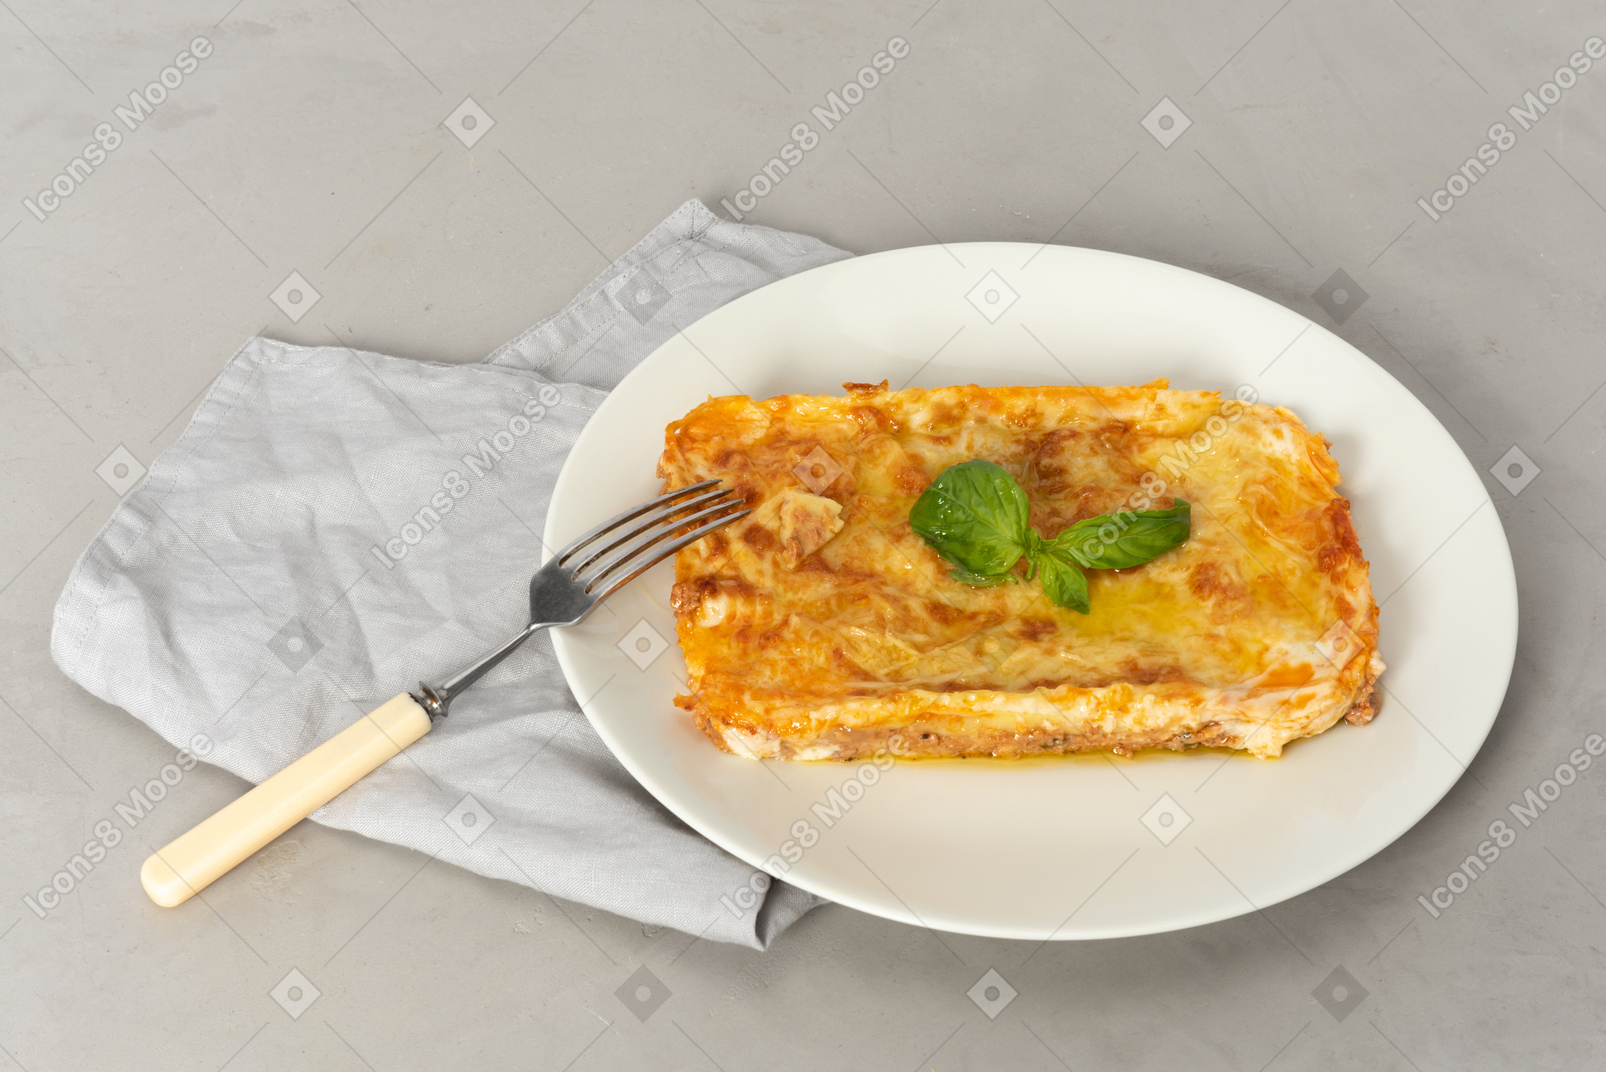 Le lasagne devono avere un sapore semplicemente fantastico